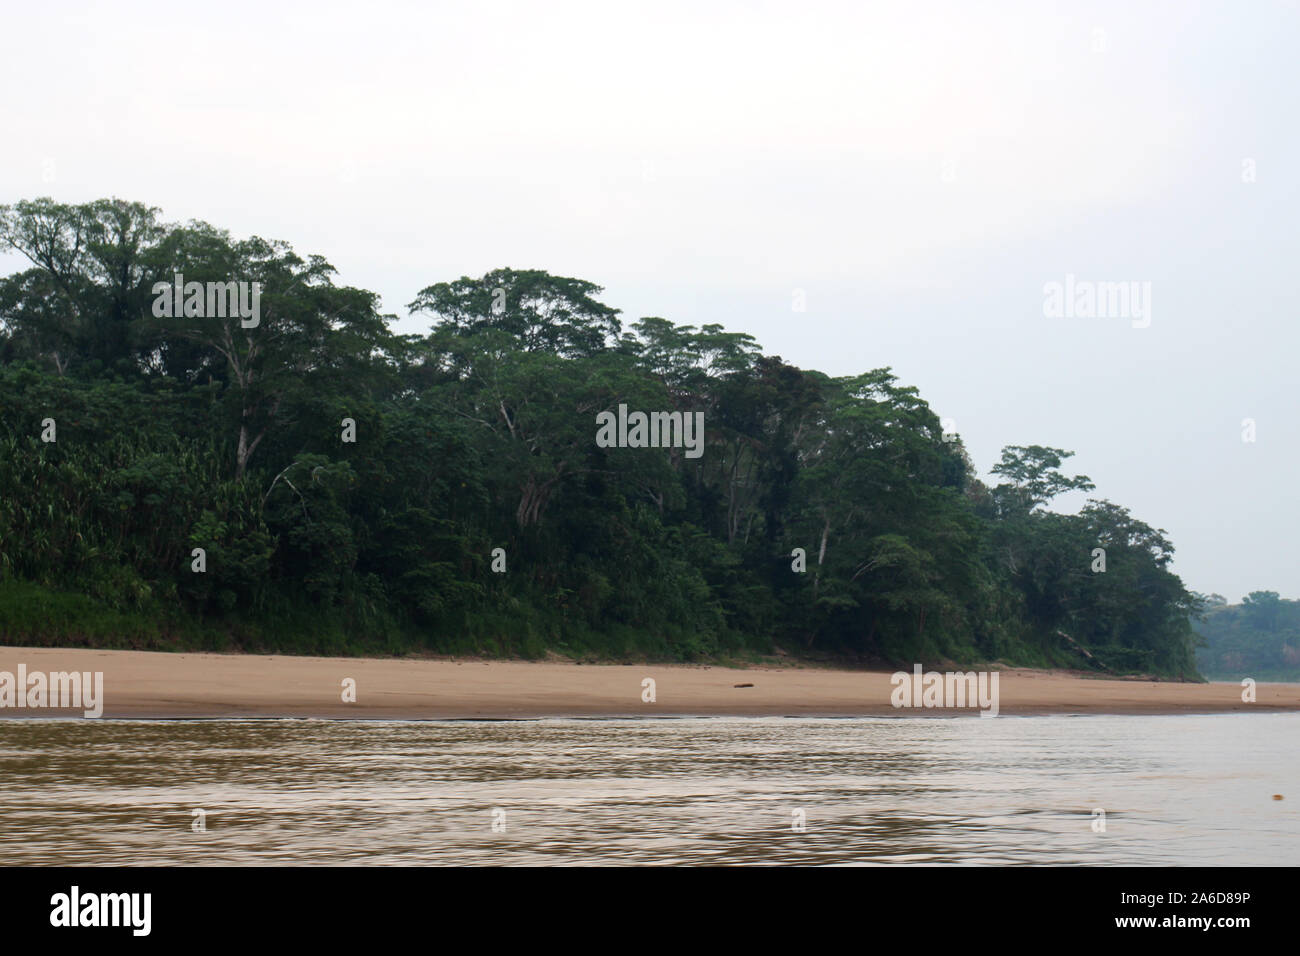 The shoreline, Amazon rainforest and the Tambopata River in Madre De Dios, Peru Stock Photo